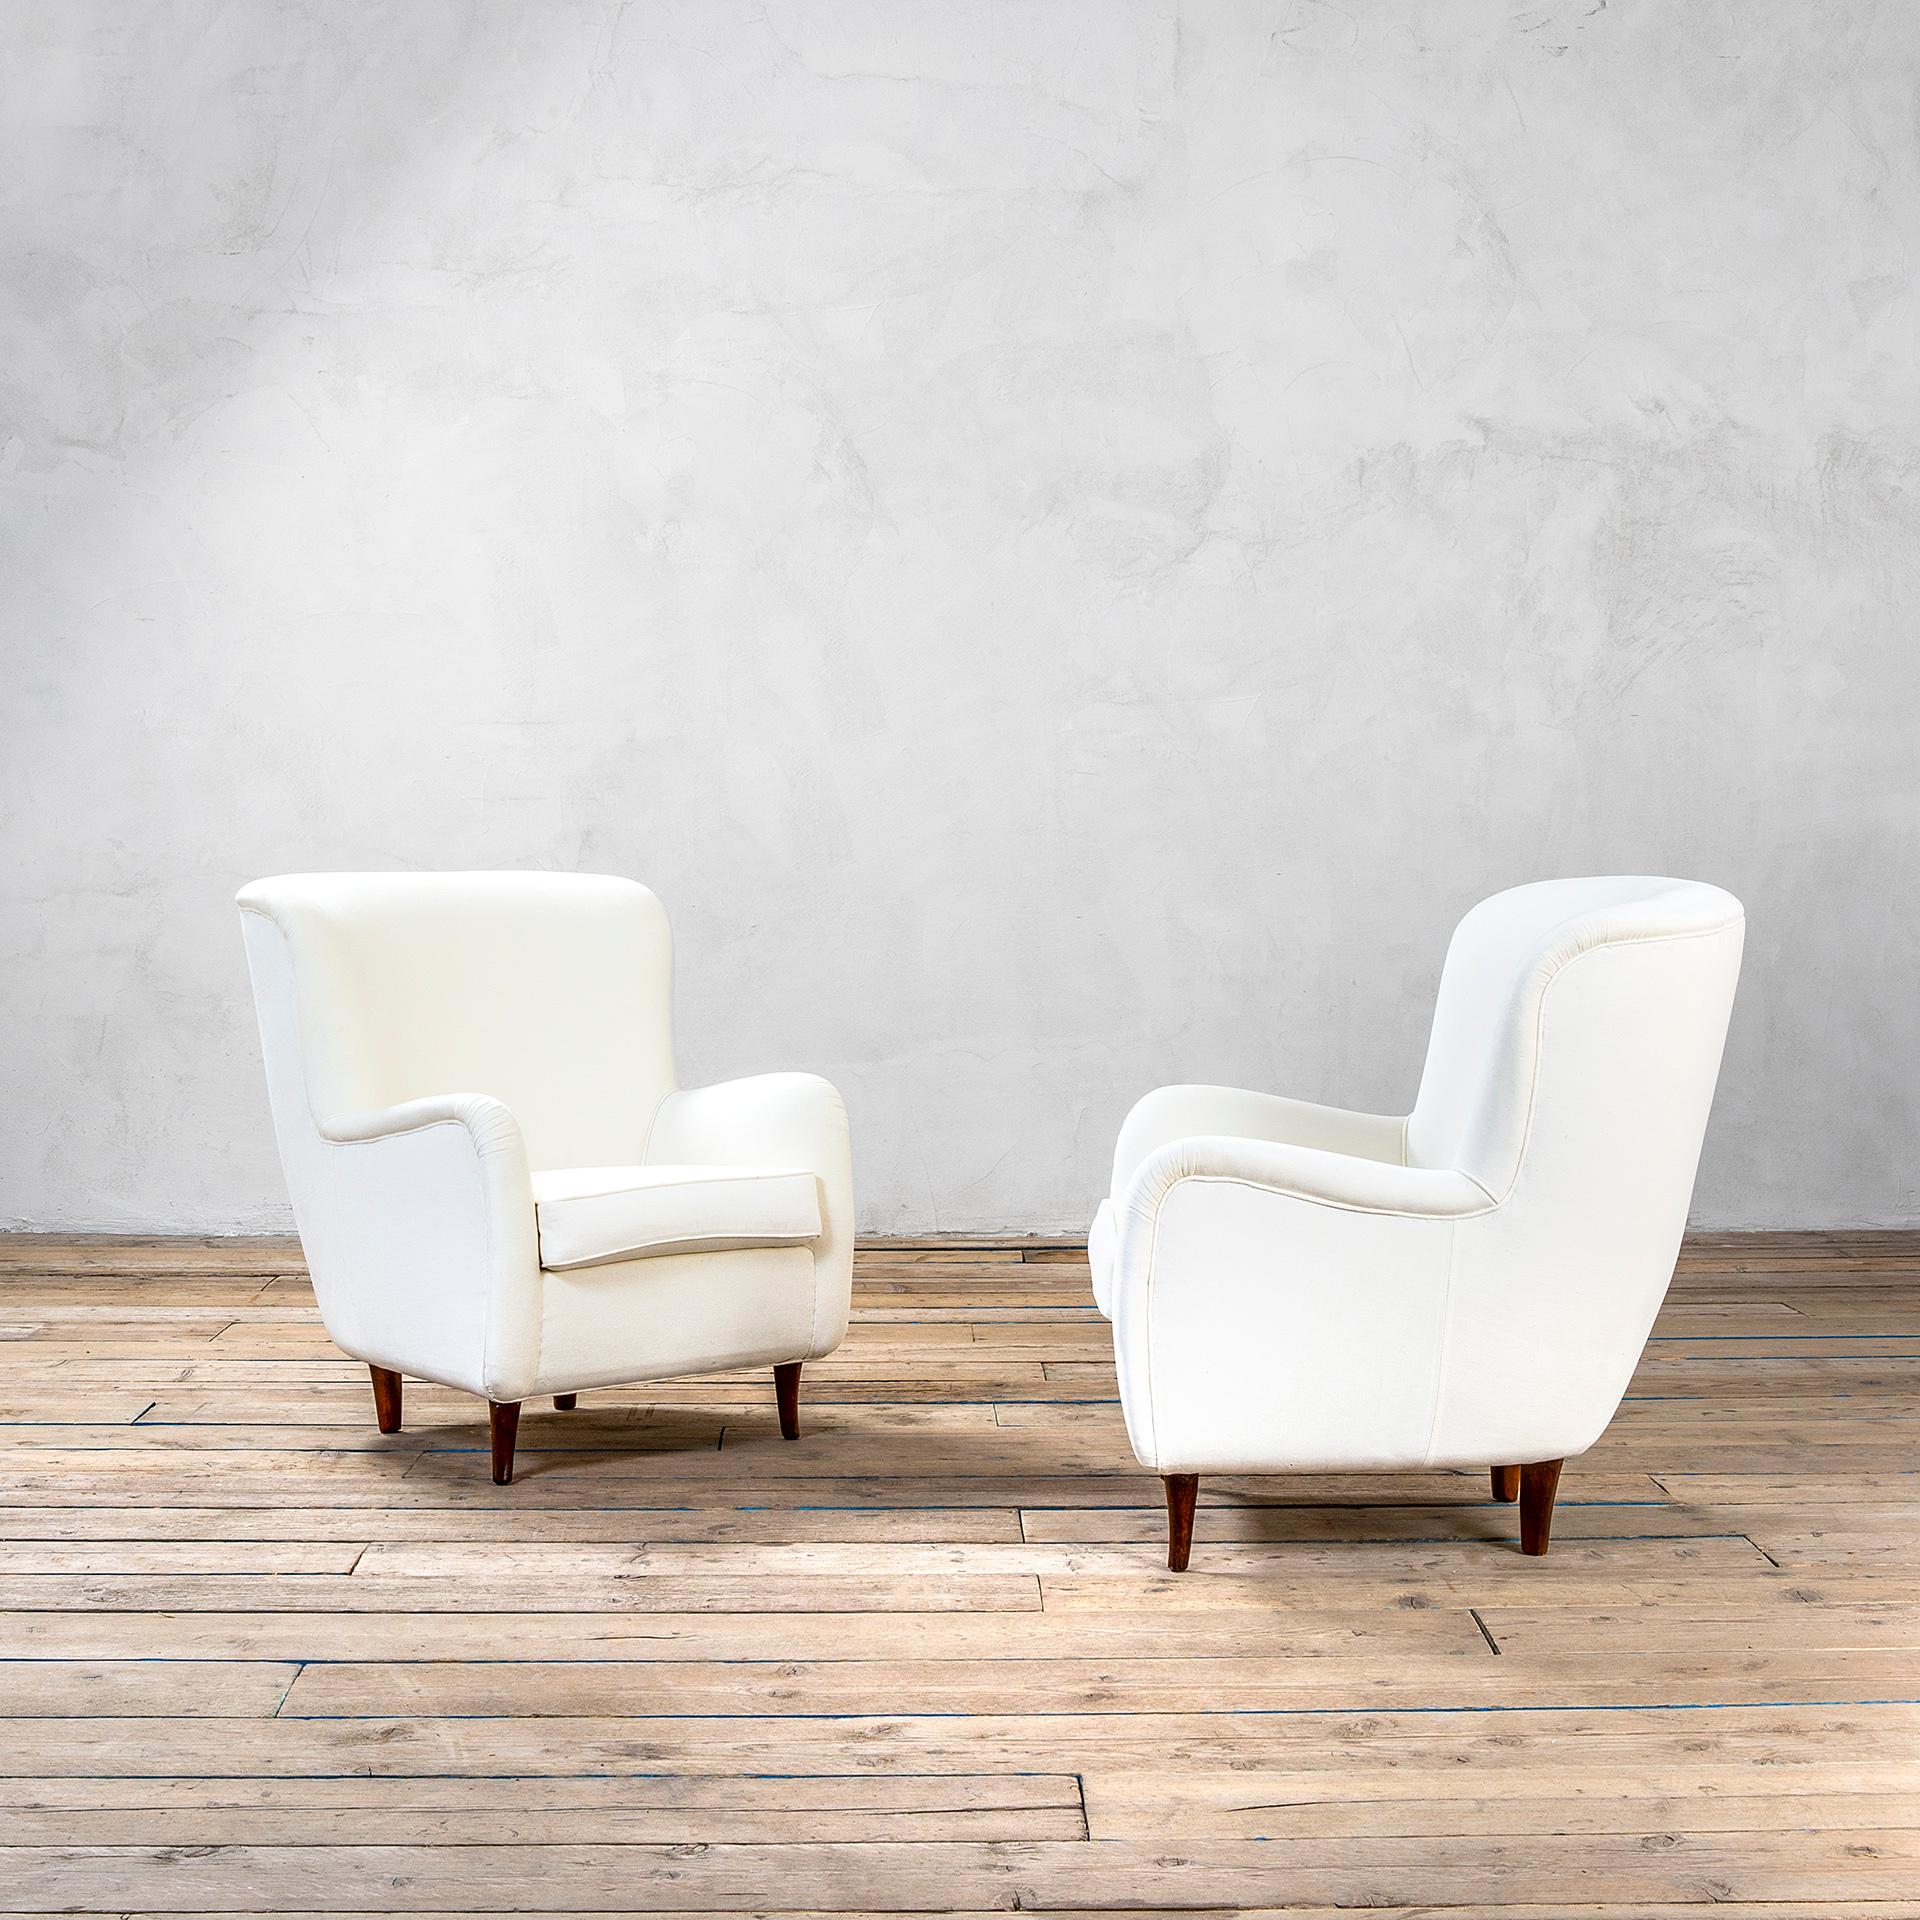 Paire de merveilleux fauteuils attribués au grand maître du design italien Franco Albini. Les fauteuils ont une structure de 4 pieds en bois et la tapisserie a été renouvelée et elle est en tissu blanc.
Très confortable et idéal pour une variété de